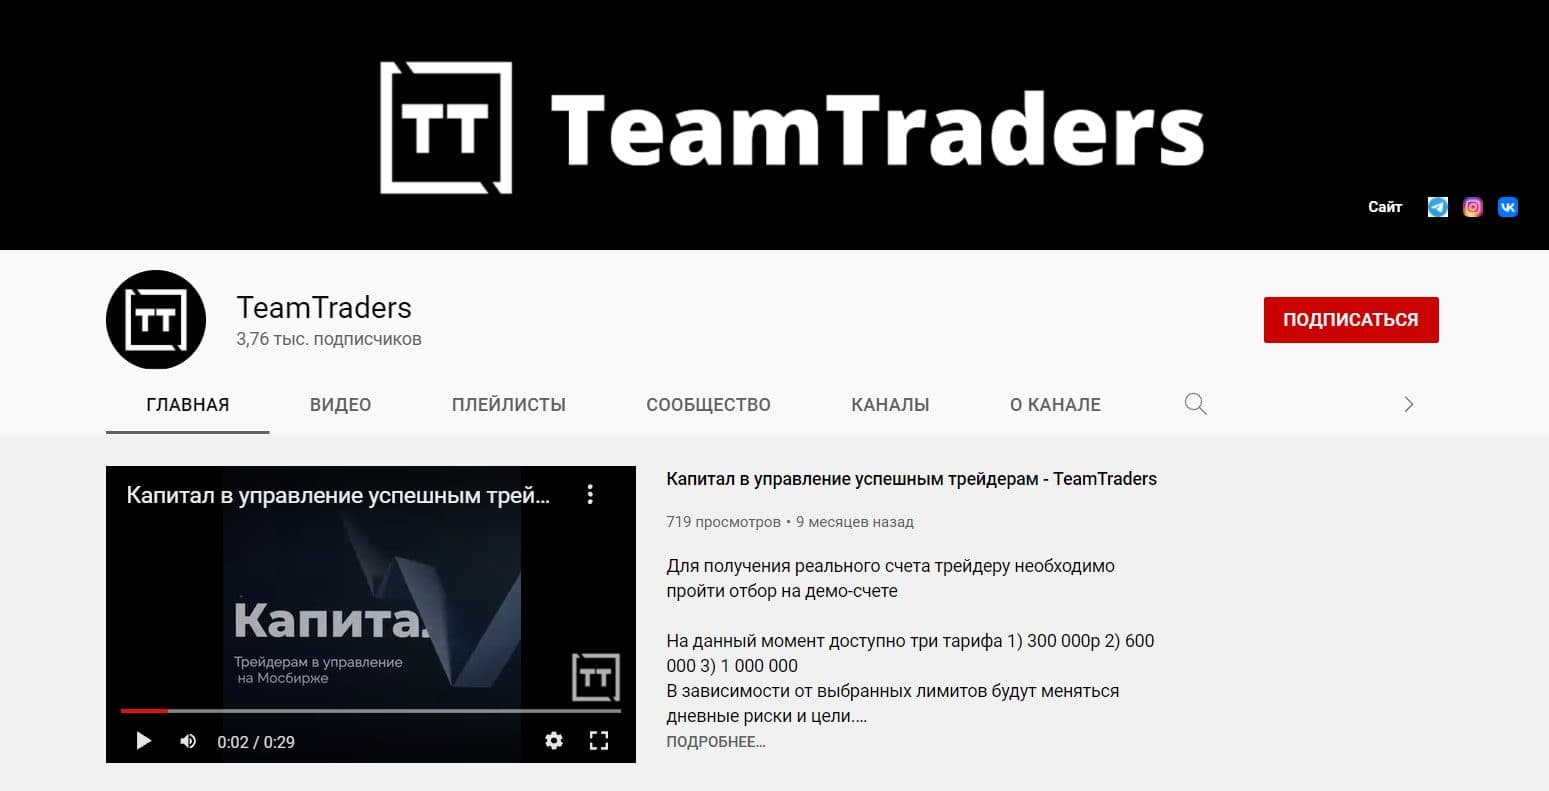 Ютуб канал Team Traders